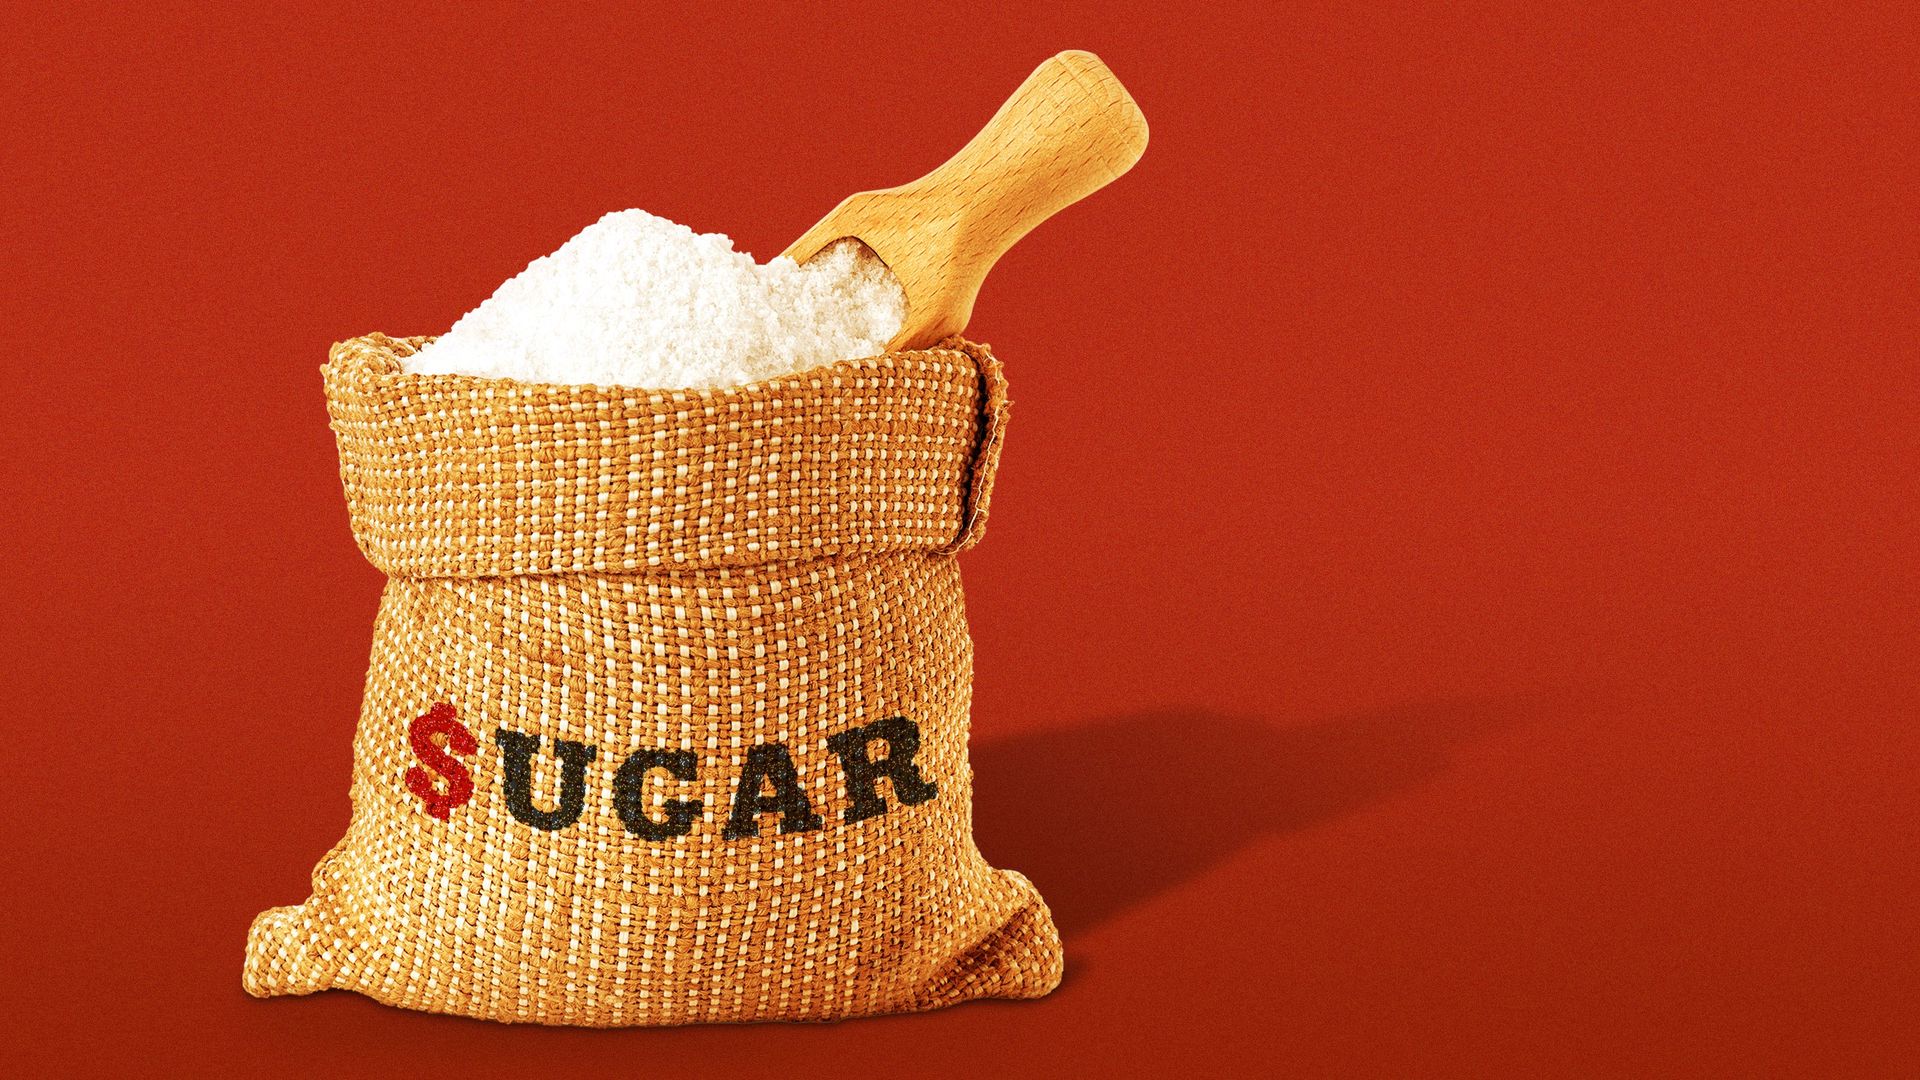 Illustration of a bag of sugar, labeled "$ugar."